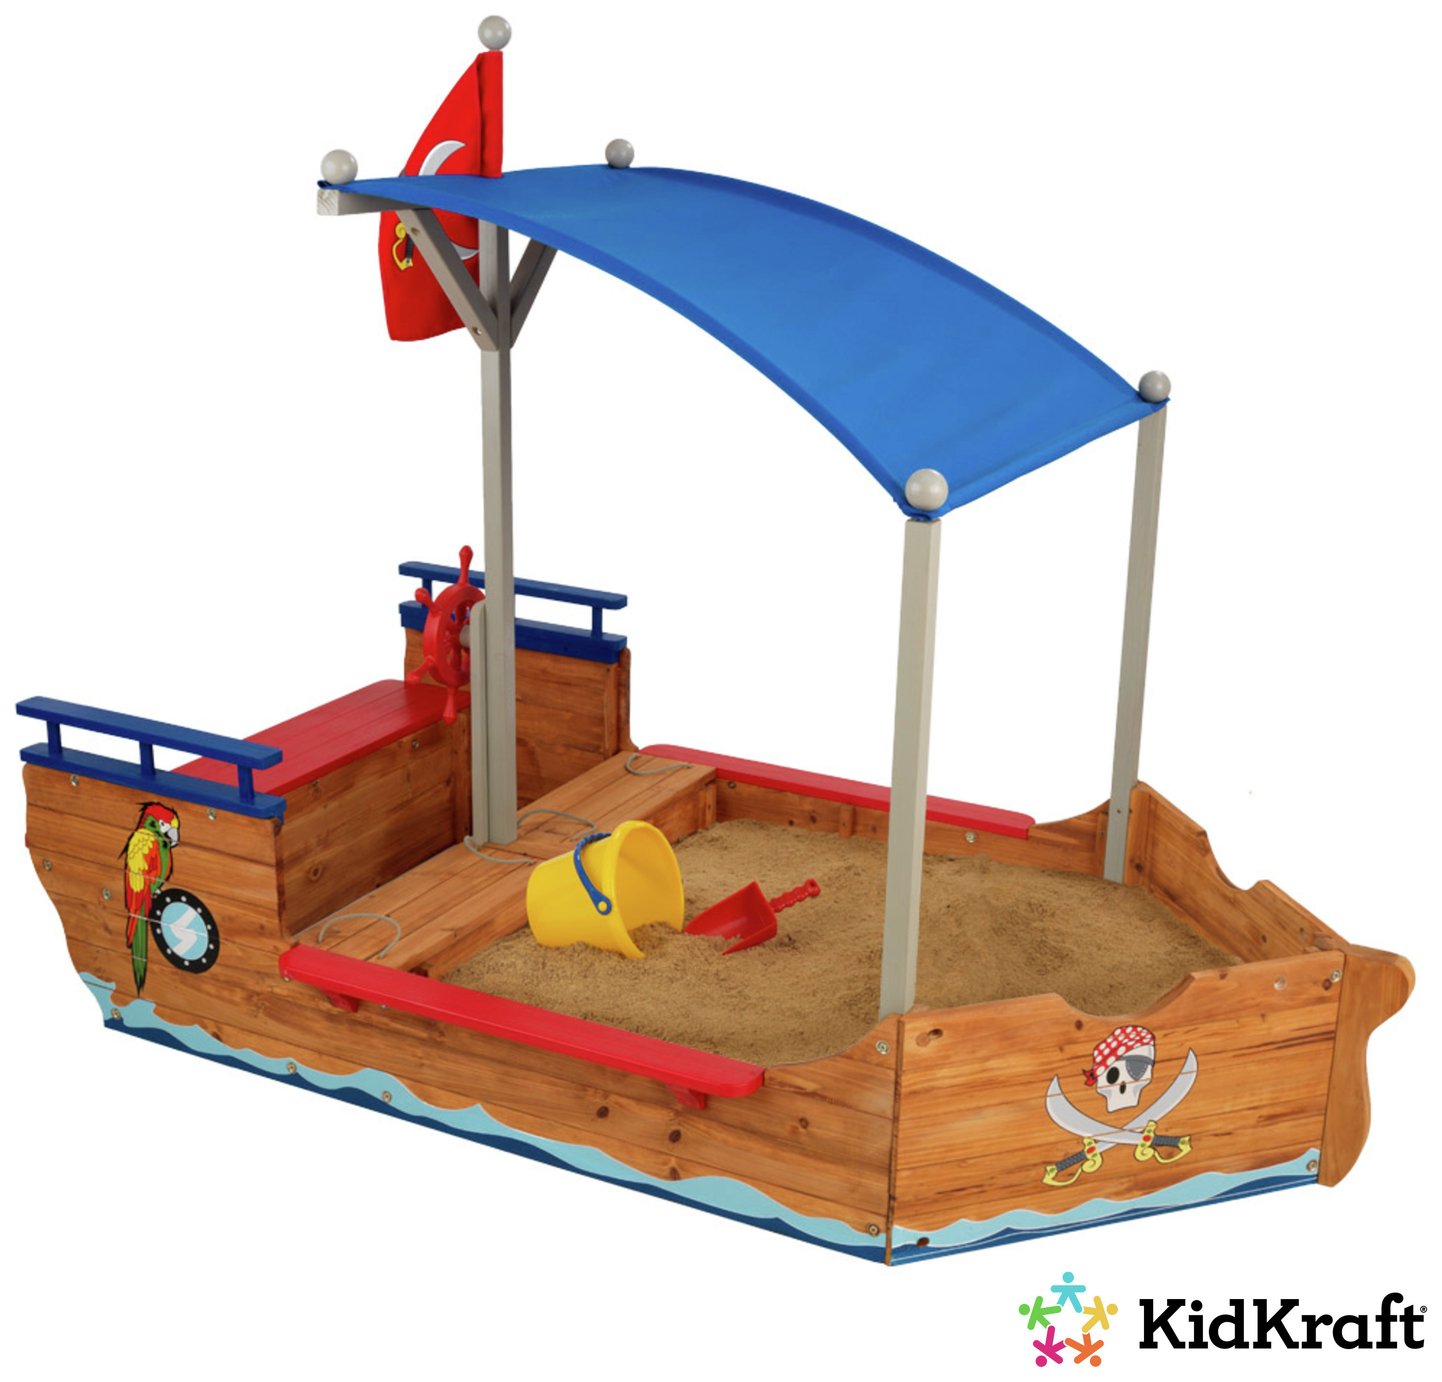 KidKraft Pirate Sandboat Sandbox